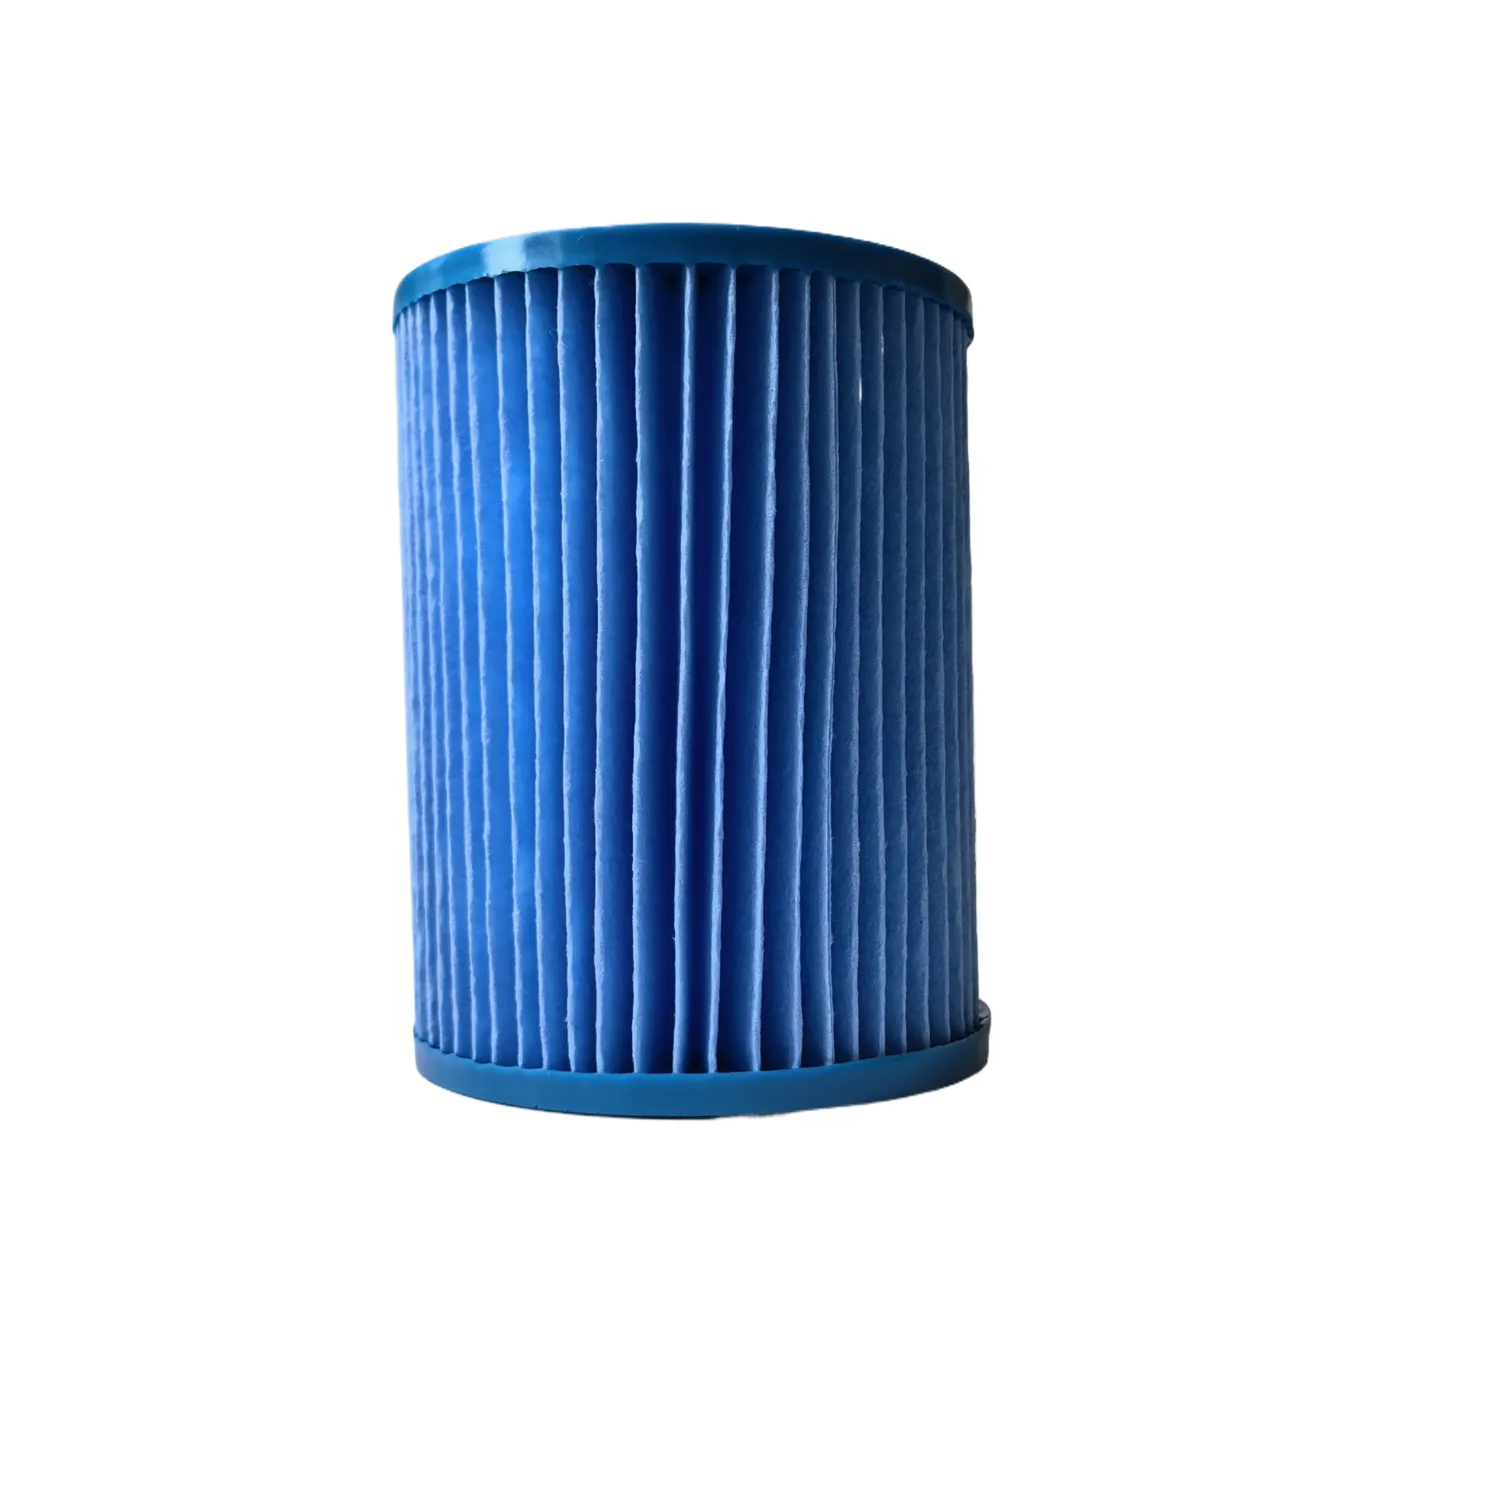 स्पा फ़िल्टर पंप के साथ संगत विश्वसनीय गुणवत्ता वाला स्पा फ़िल्टर तत्व प्रकार II हॉट टब फ़िल्टर कार्ट्रिज